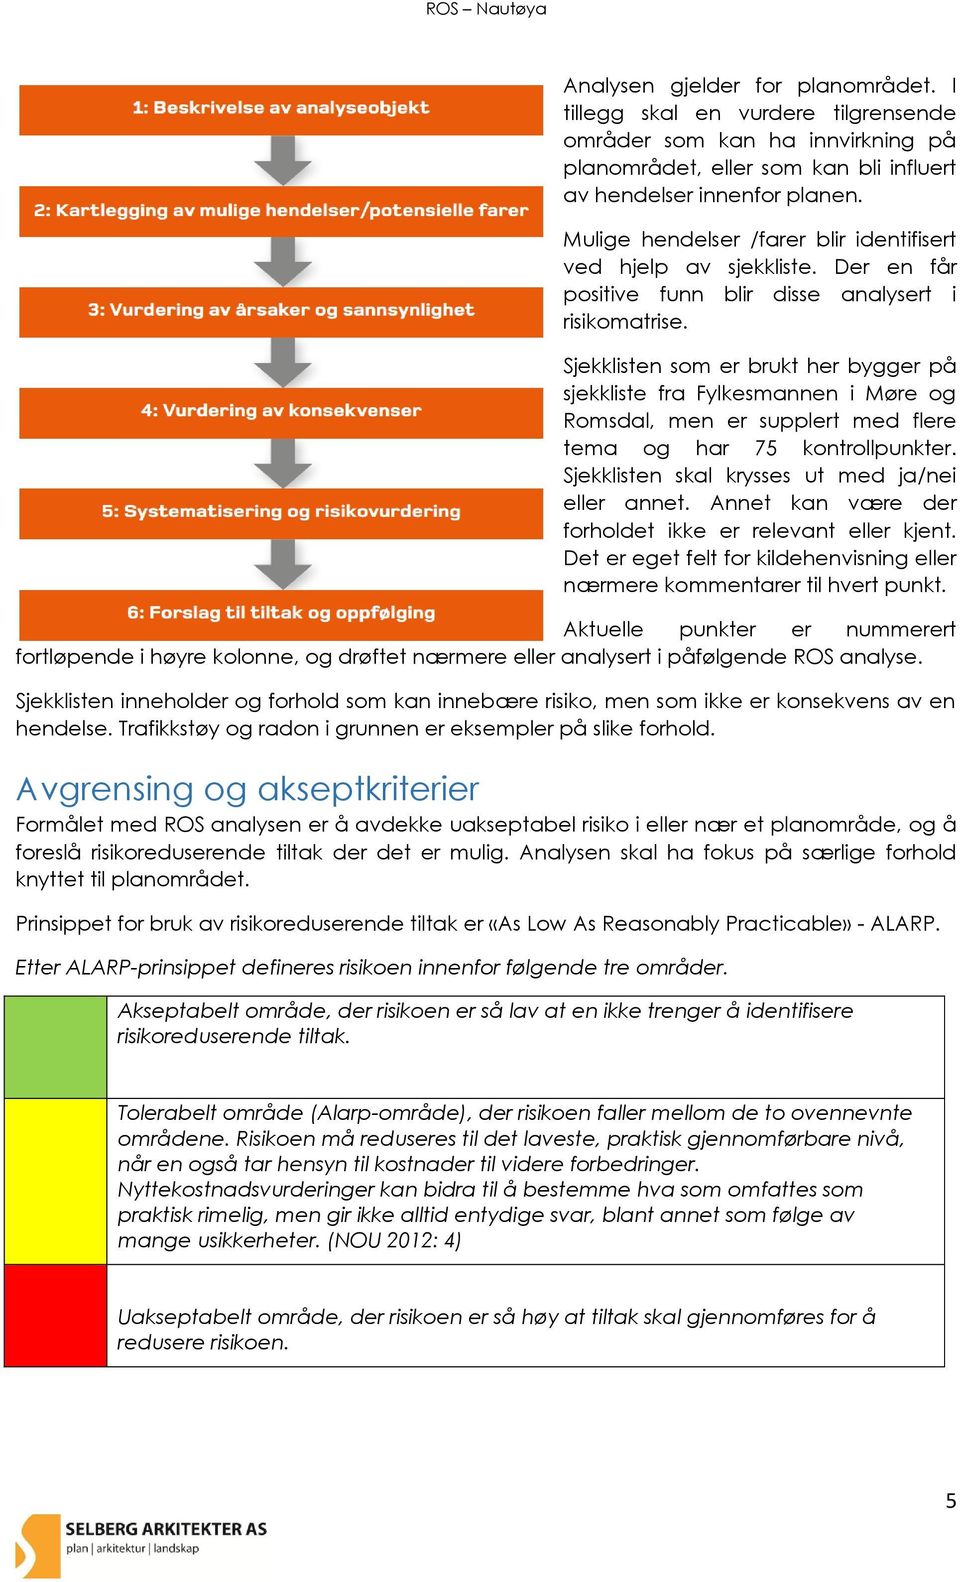 Sjekklisten som er brukt her bygger på sjekkliste fra Fylkesmannen i Møre og Romsdal, men er supplert med flere tema og har 75 kontrollpunkter. Sjekklisten skal krysses ut med ja/nei eller annet.